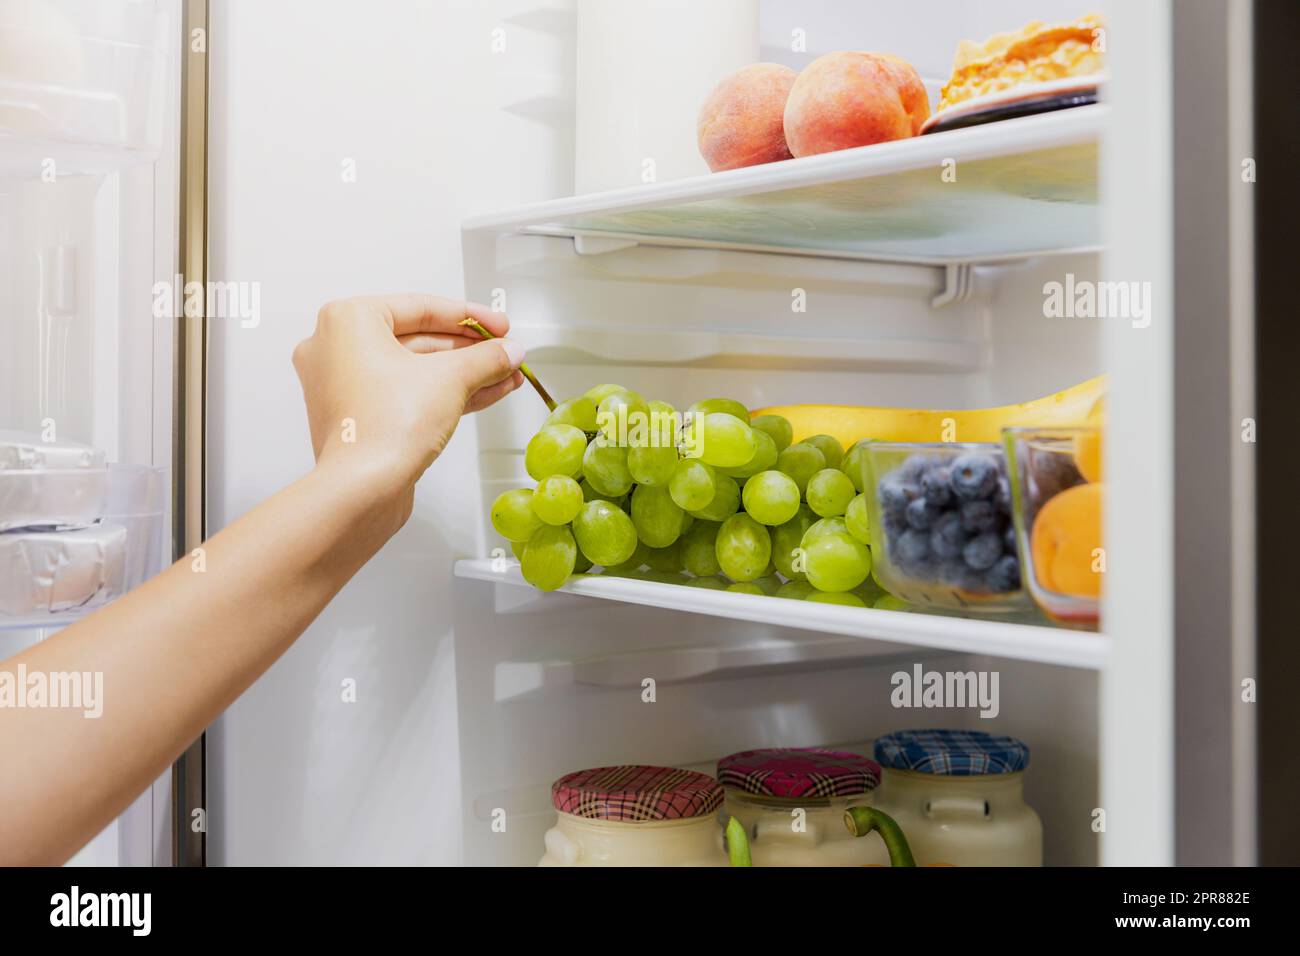 Una donna che prende o raccoglie un mazzo di uva dal frigorifero o dal frigorifero aperto Foto Stock